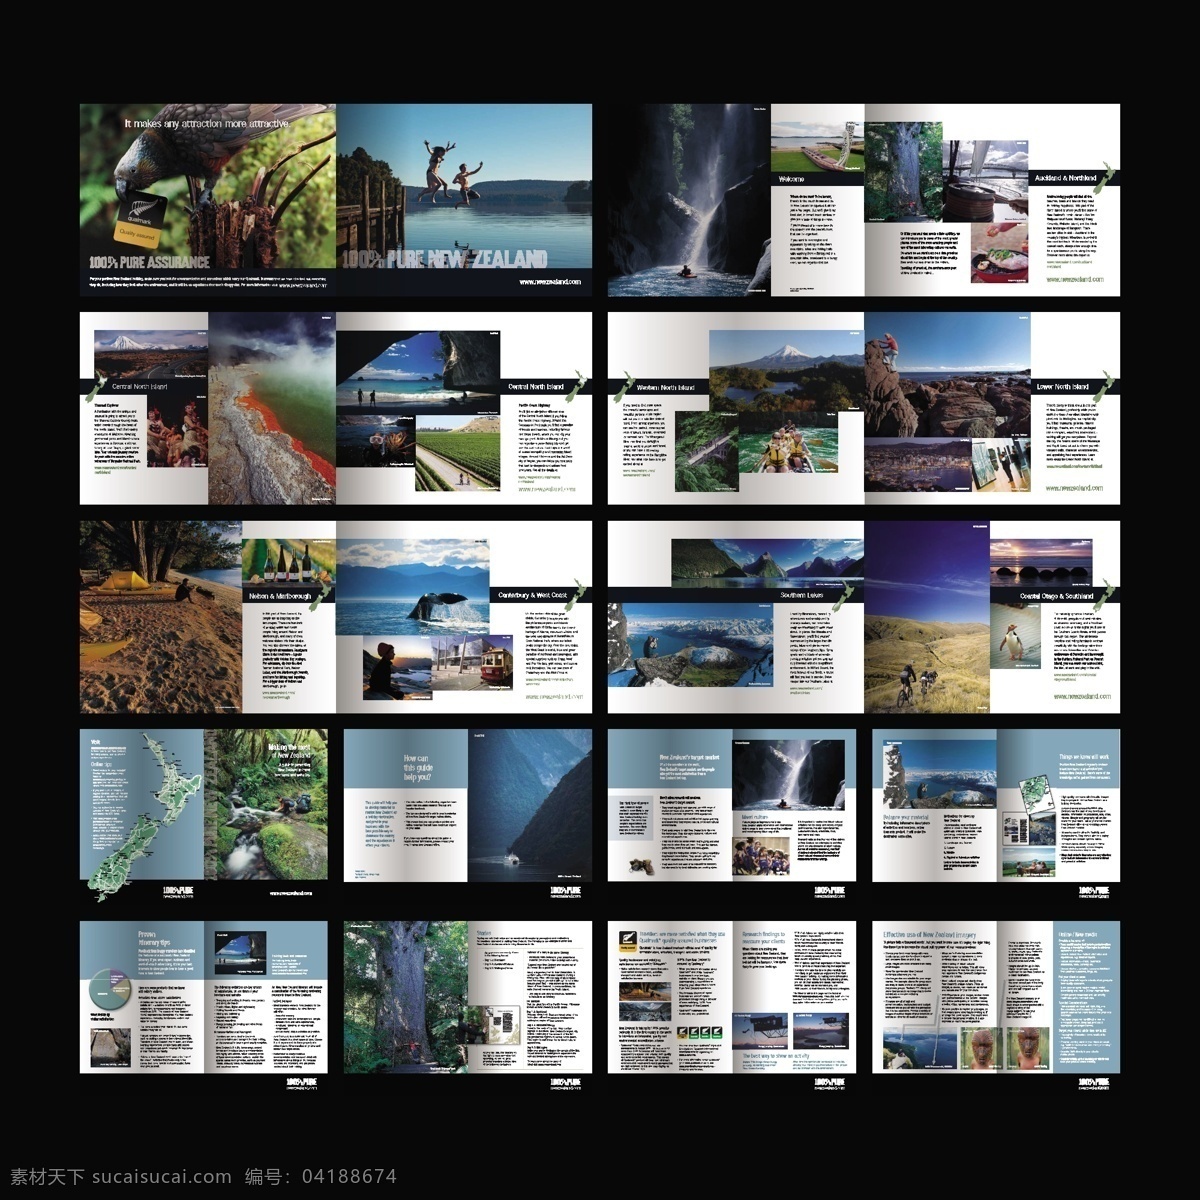 国外 旅游风景 杂志 画册 版式设计 风景 旅行 其他画册整套